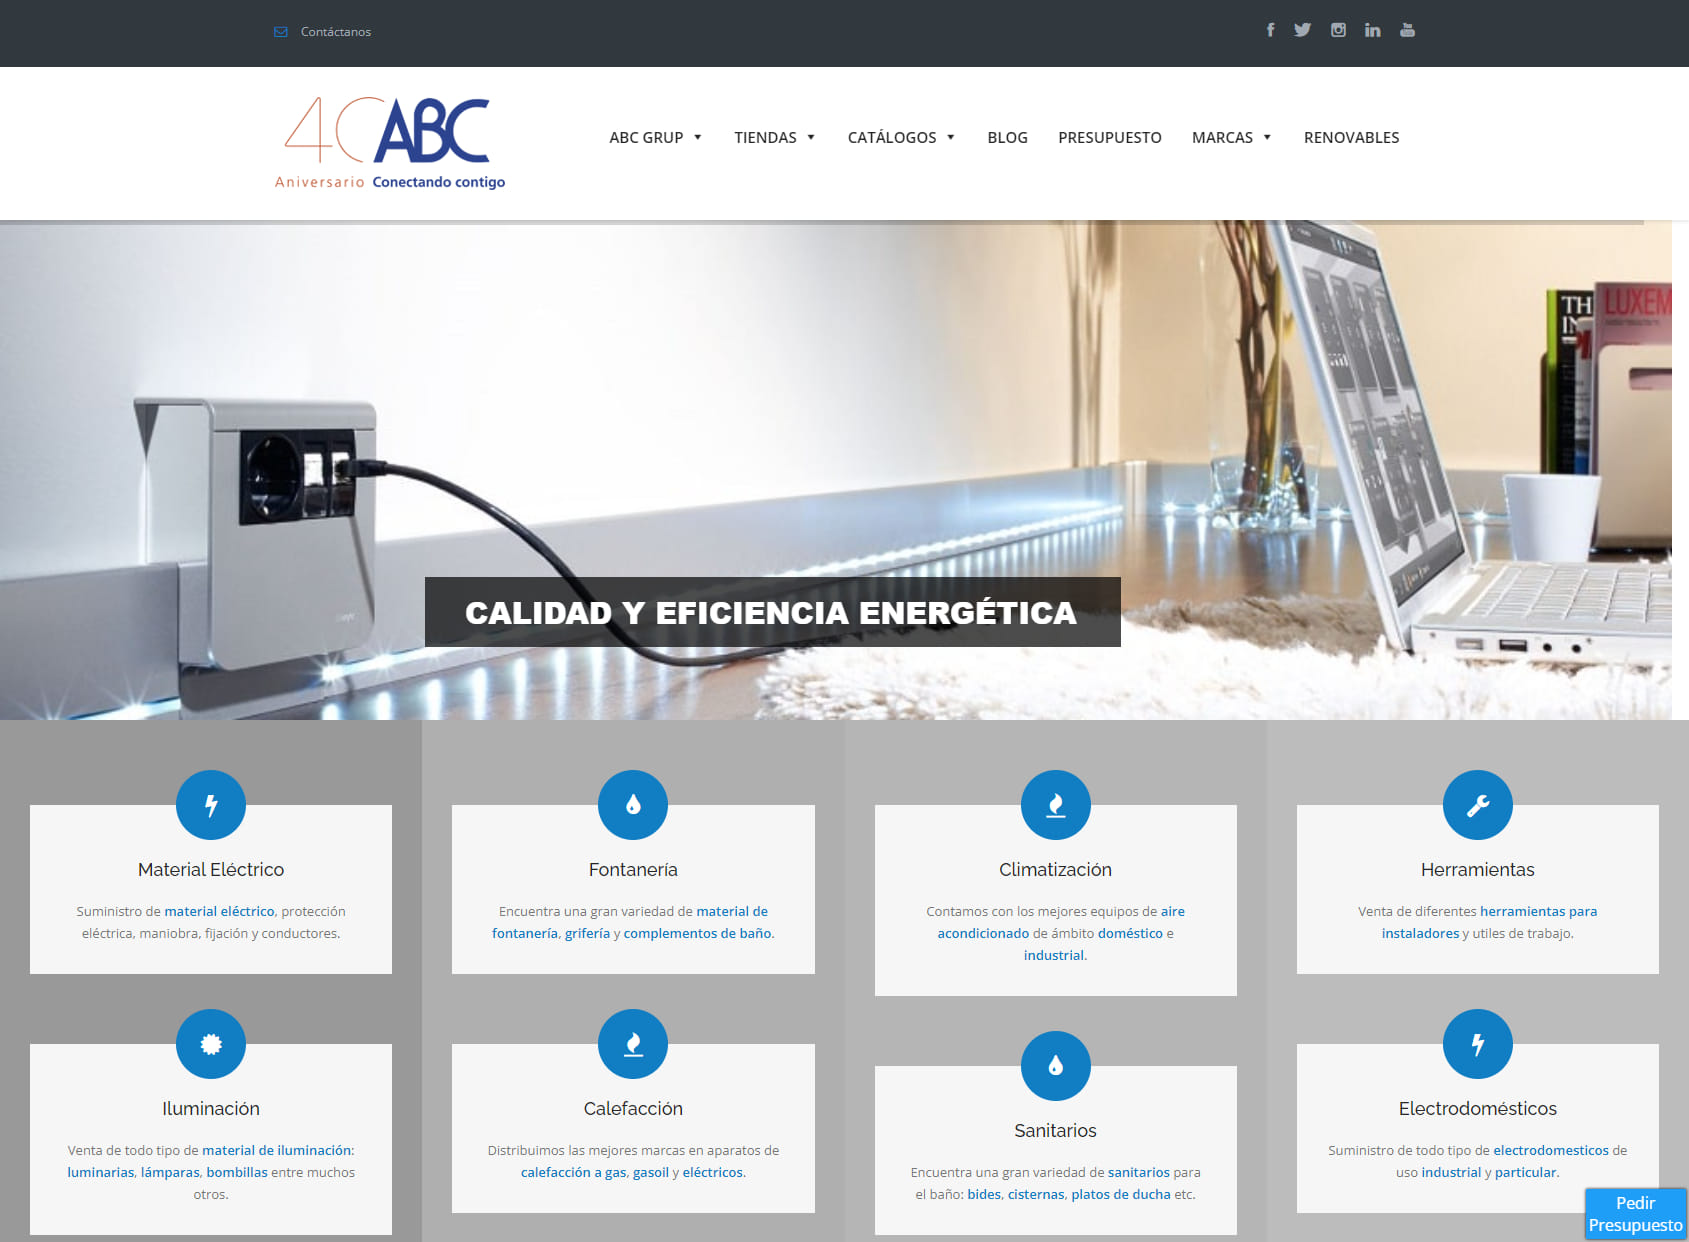 ABC Badalona - Suministros eléctricos, fontanería